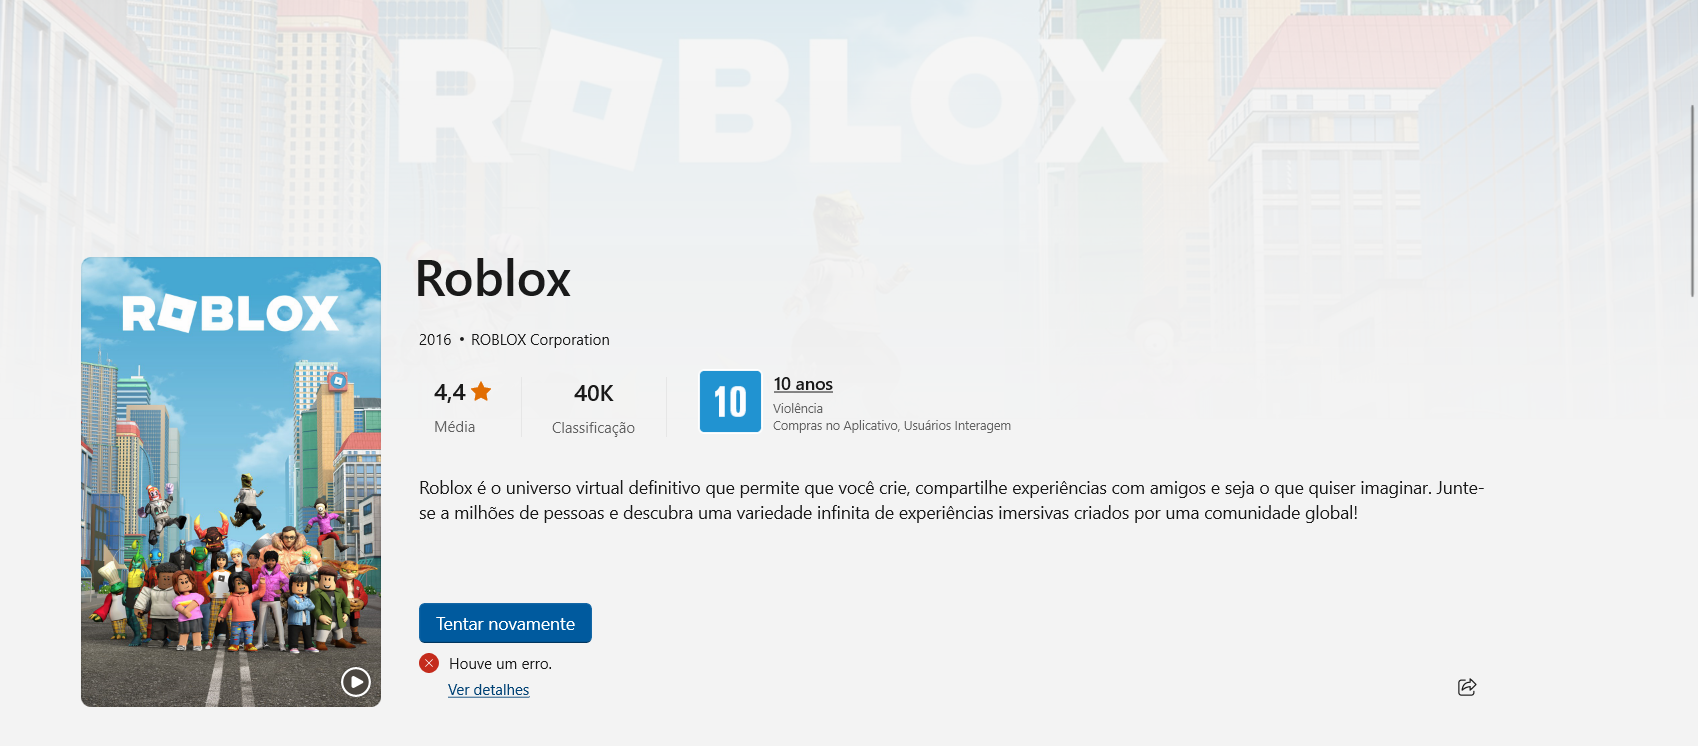 Erro na compra de robux no roblox - Comunidade Google Play